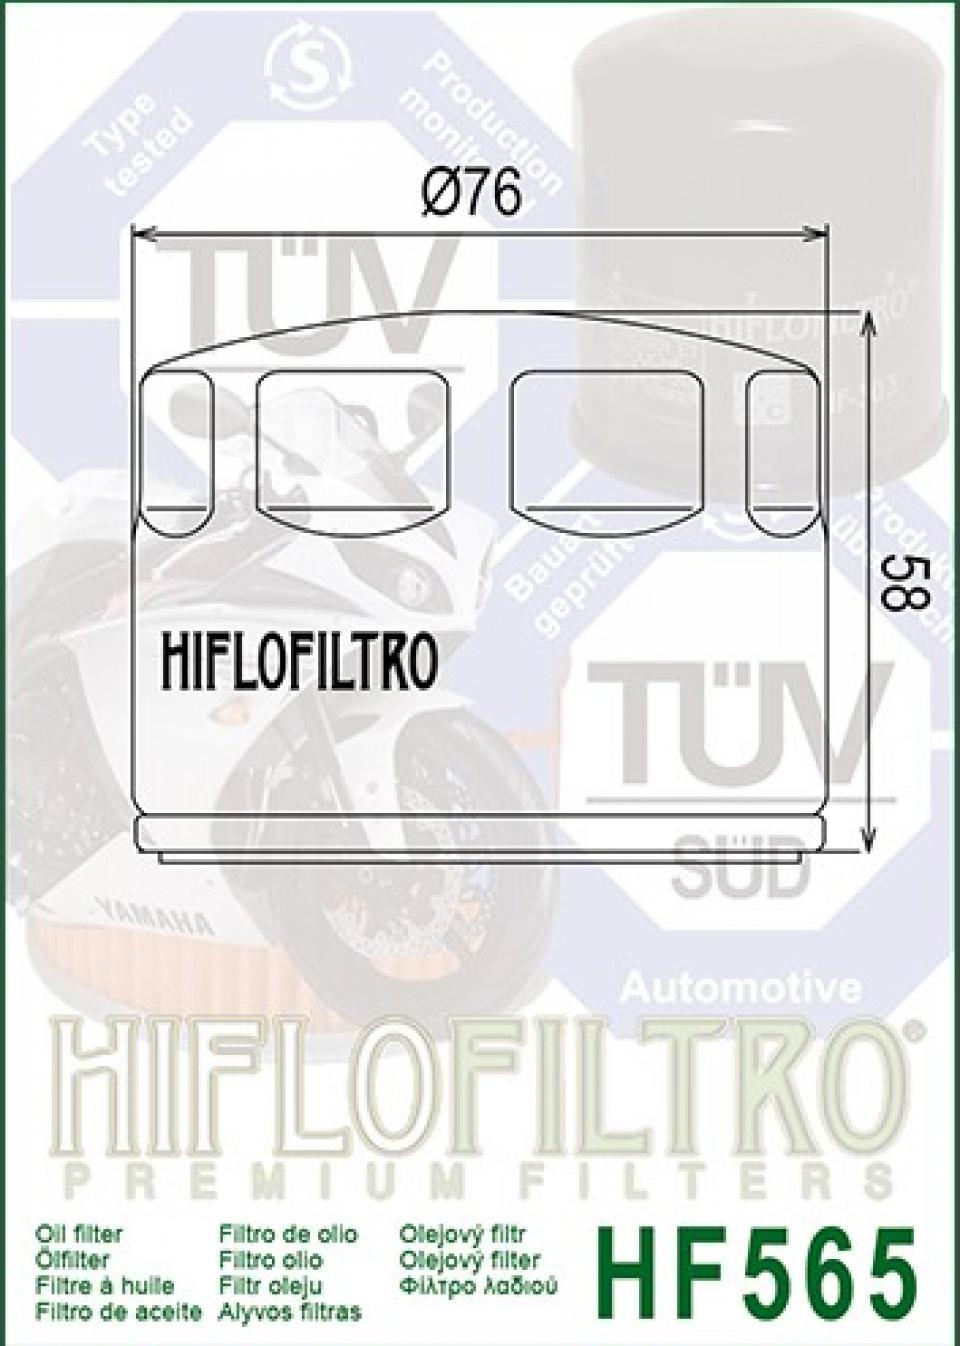 Filtre à huile Hiflo Filtro pour Moto Aprilia 750 Sl Shiver Gt 2009-2012 Neuf